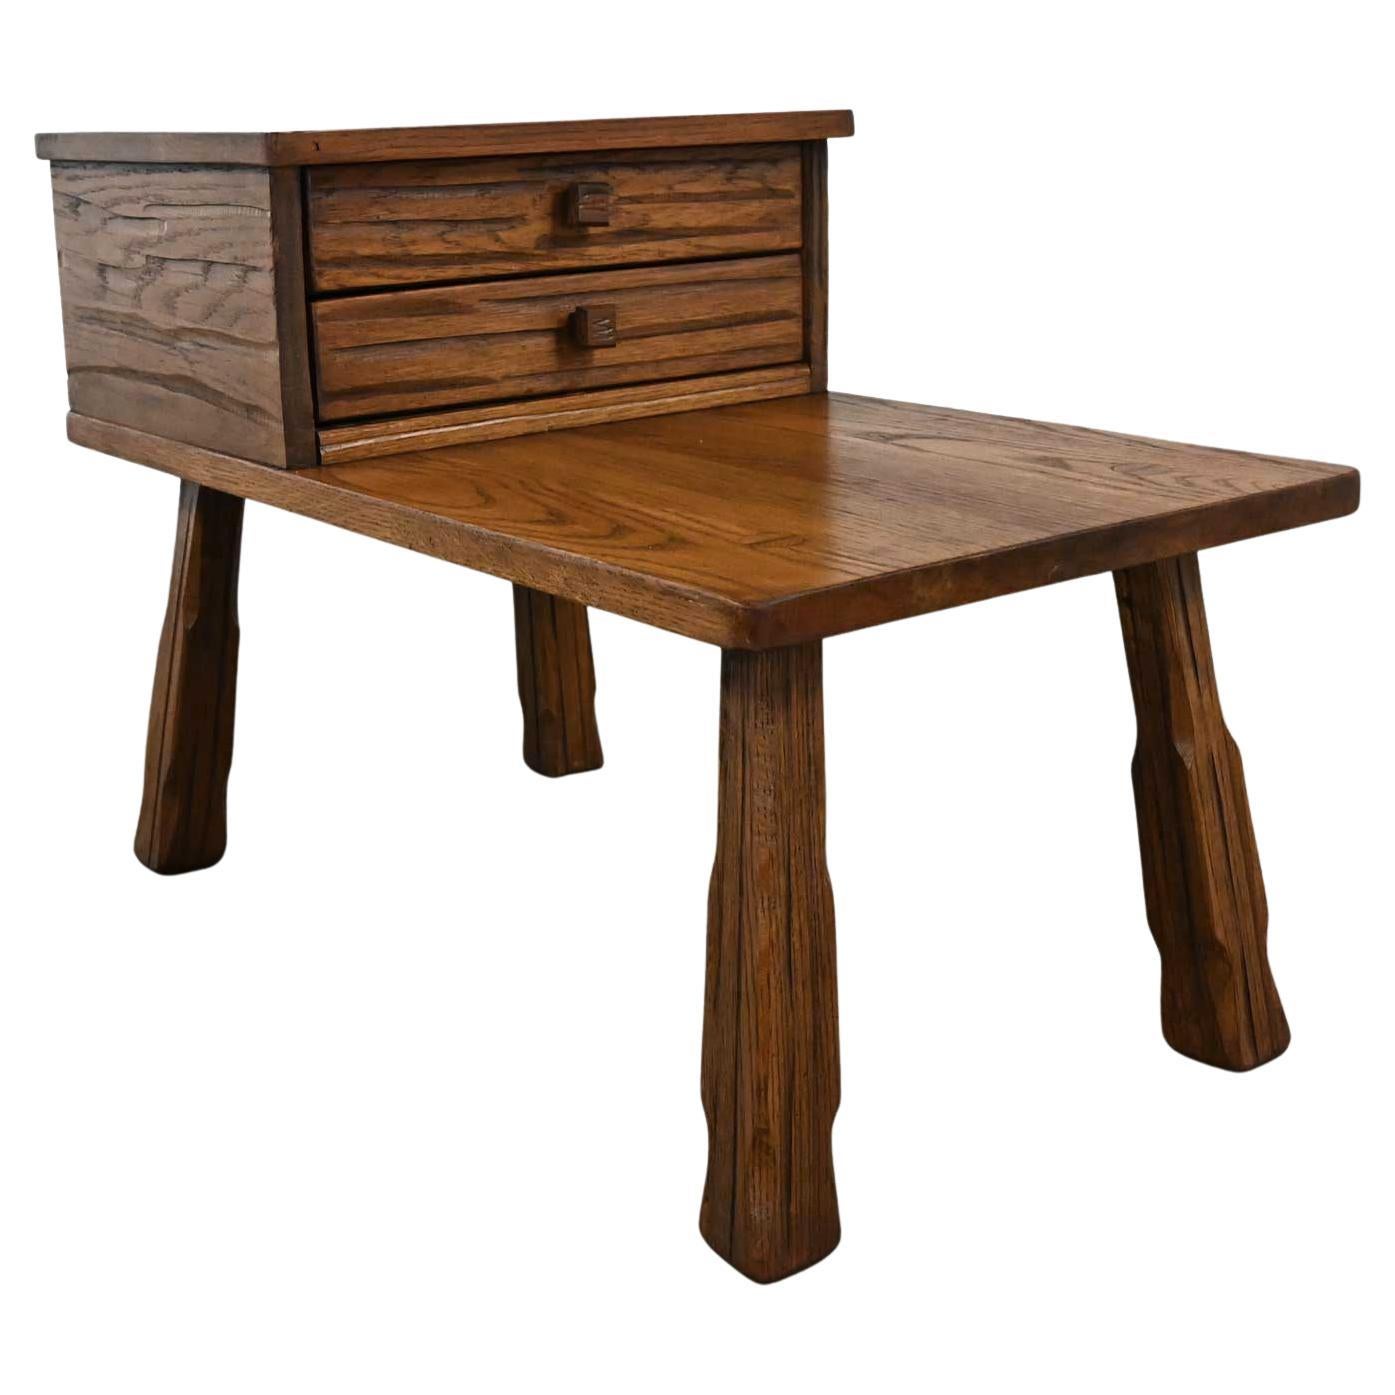 Table d'extrémité rustique en chêne de ranch avec 2 tiroirs et finition brun gland par A. Brandt